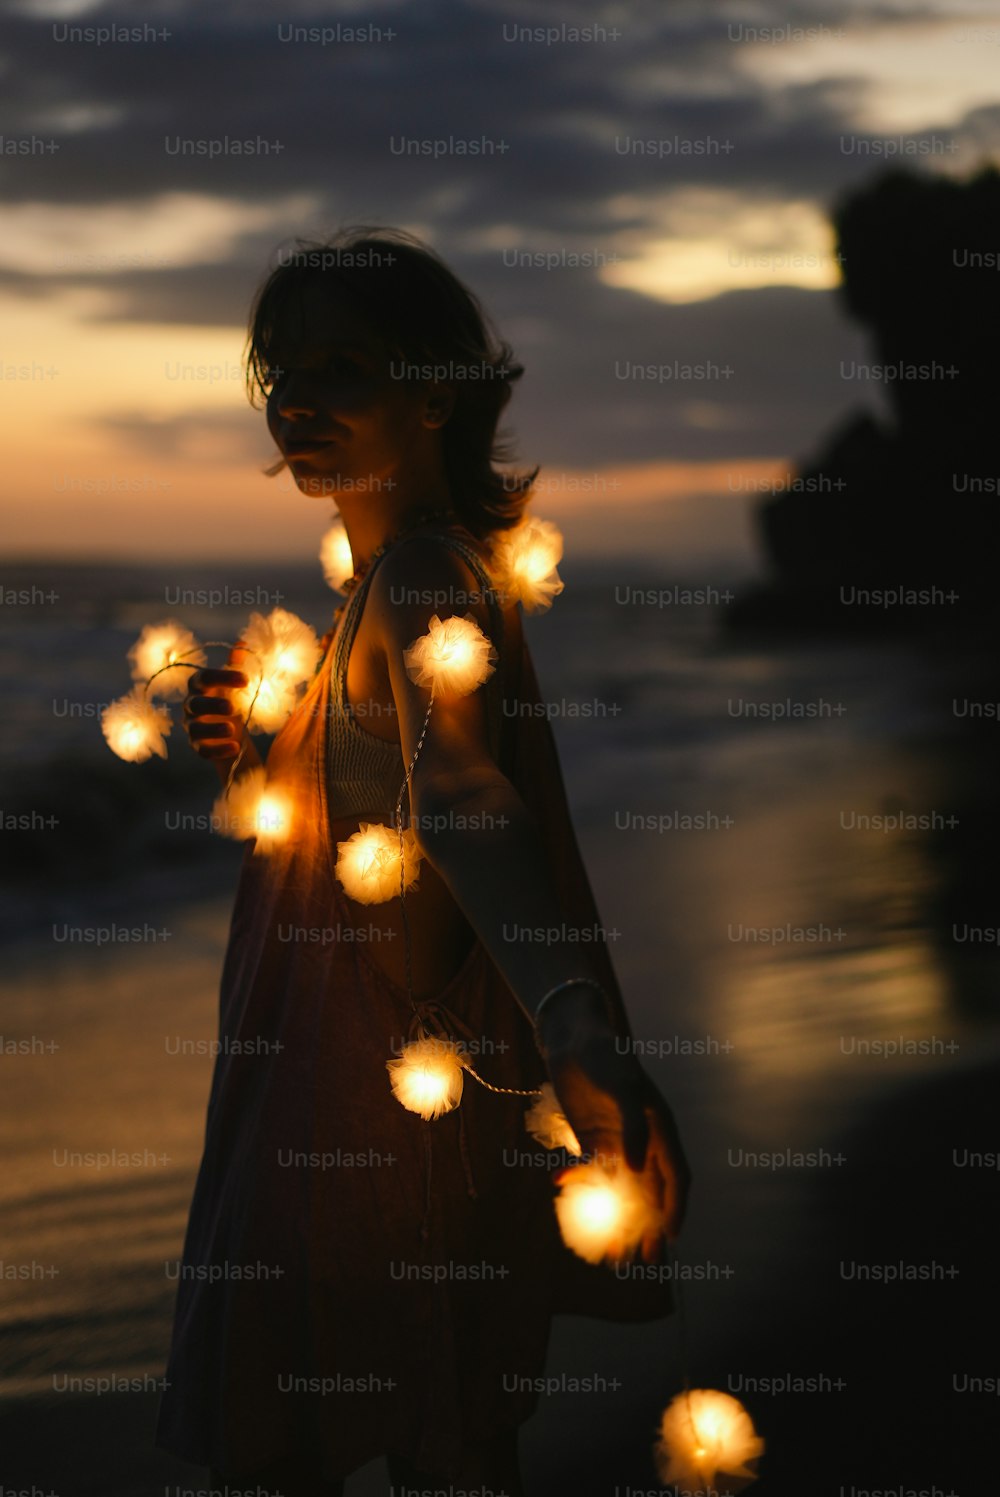 Une femme debout sur une plage tenant une guirlande lumineuse